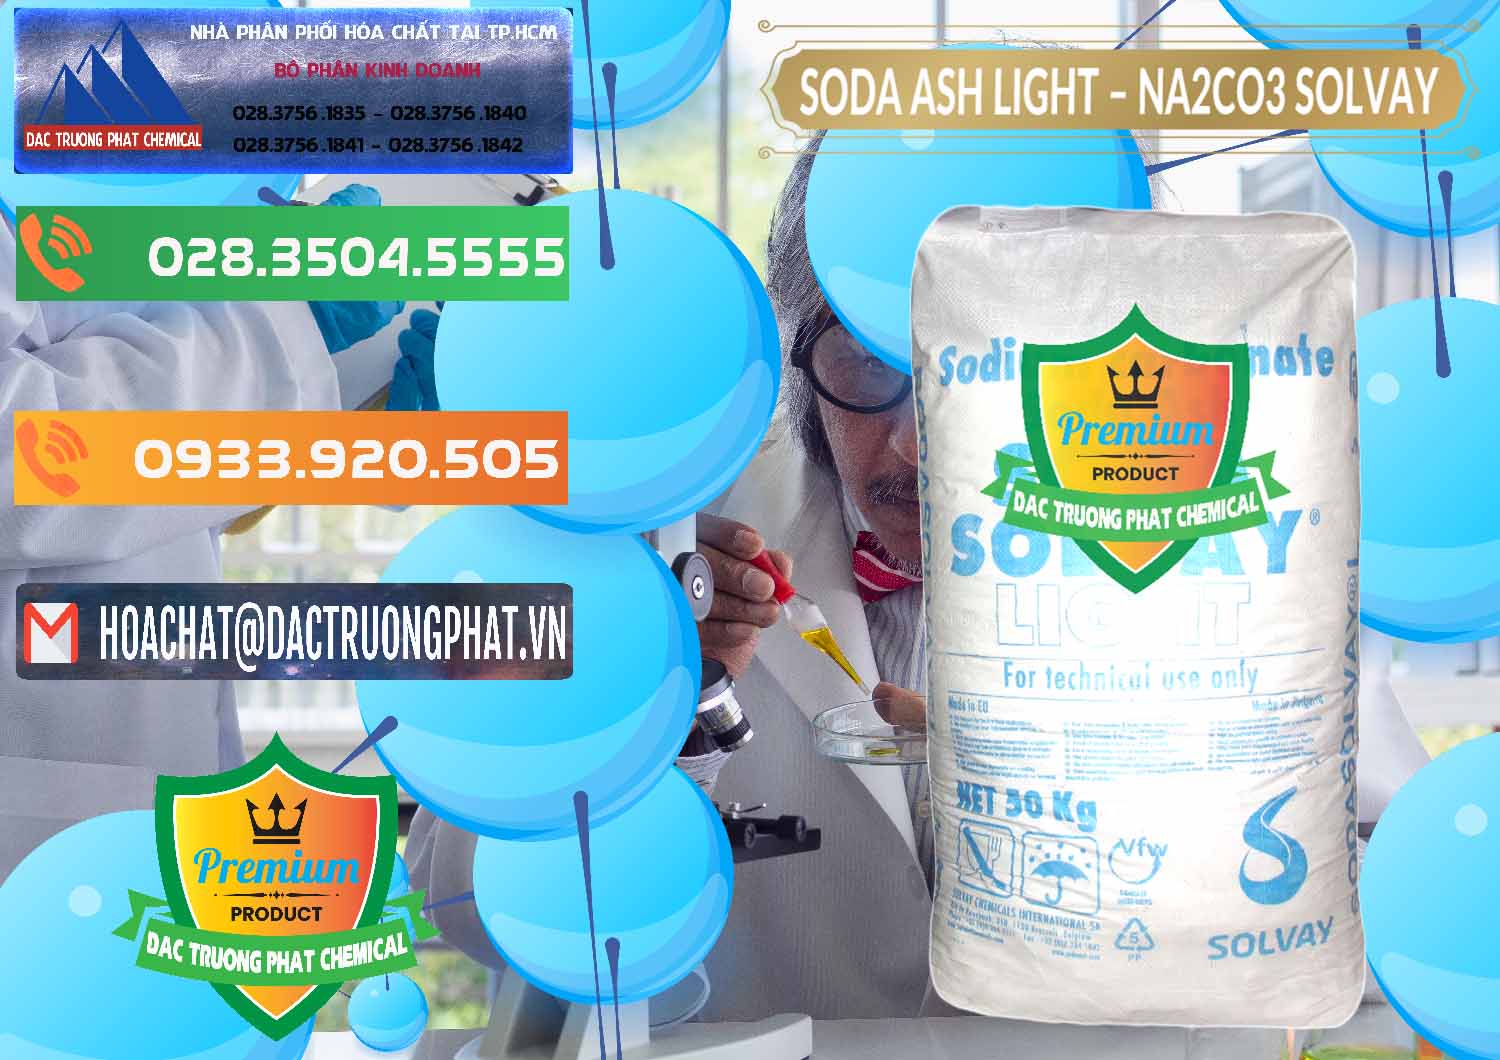 Cty chuyên bán _ phân phối Soda Ash Light - NA2CO3 Solvay Bulgaria - 0126 - Công ty chuyên bán ( cung cấp ) hóa chất tại TP.HCM - hoachatxulynuoc.com.vn